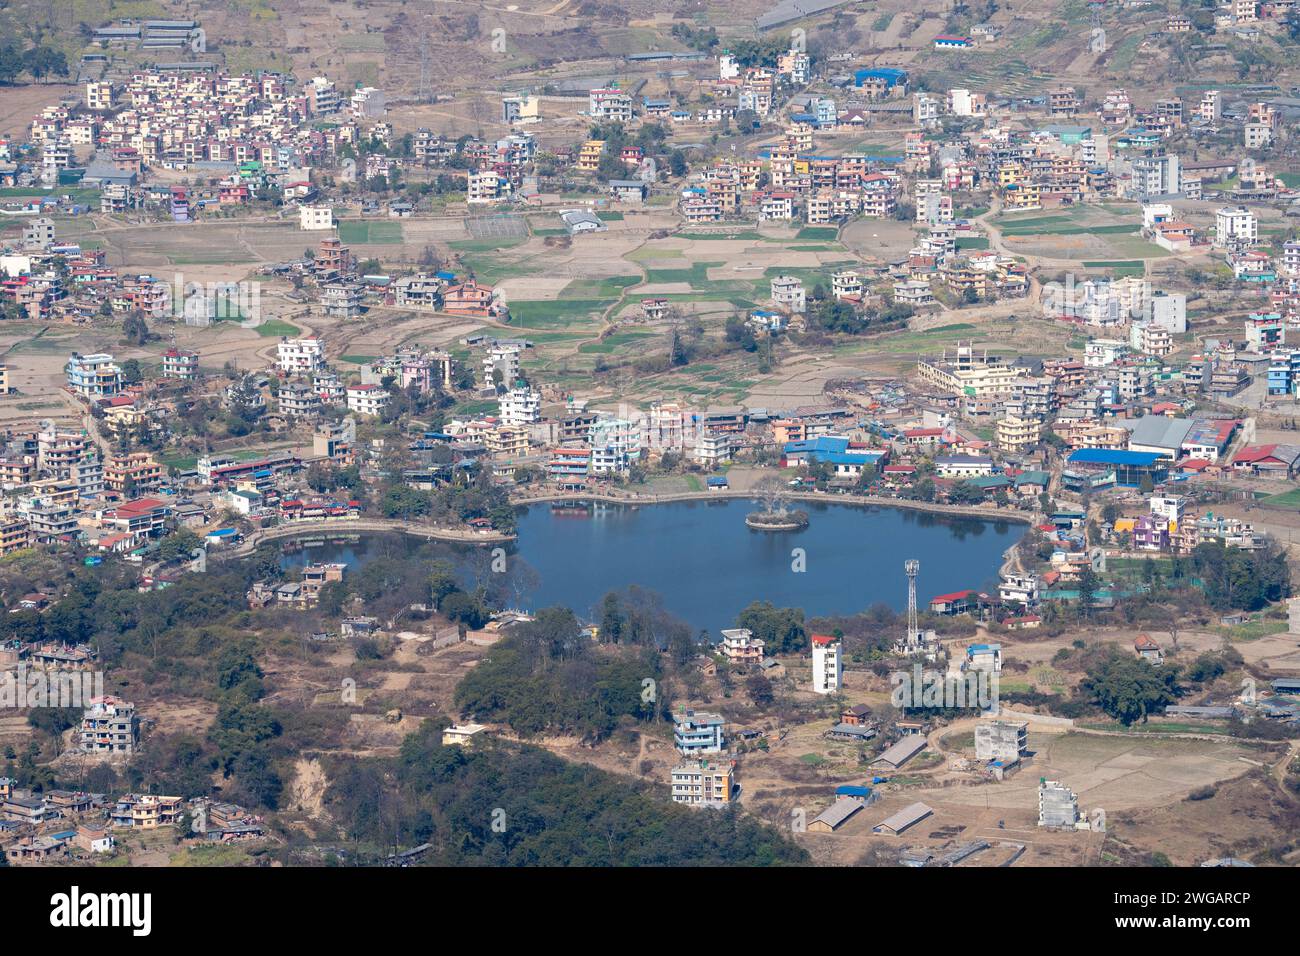 Ein Blick aus der Vogelperspektive auf den Taudaha See am Stadtrand von Kathmandu, Nepal. Stockfoto